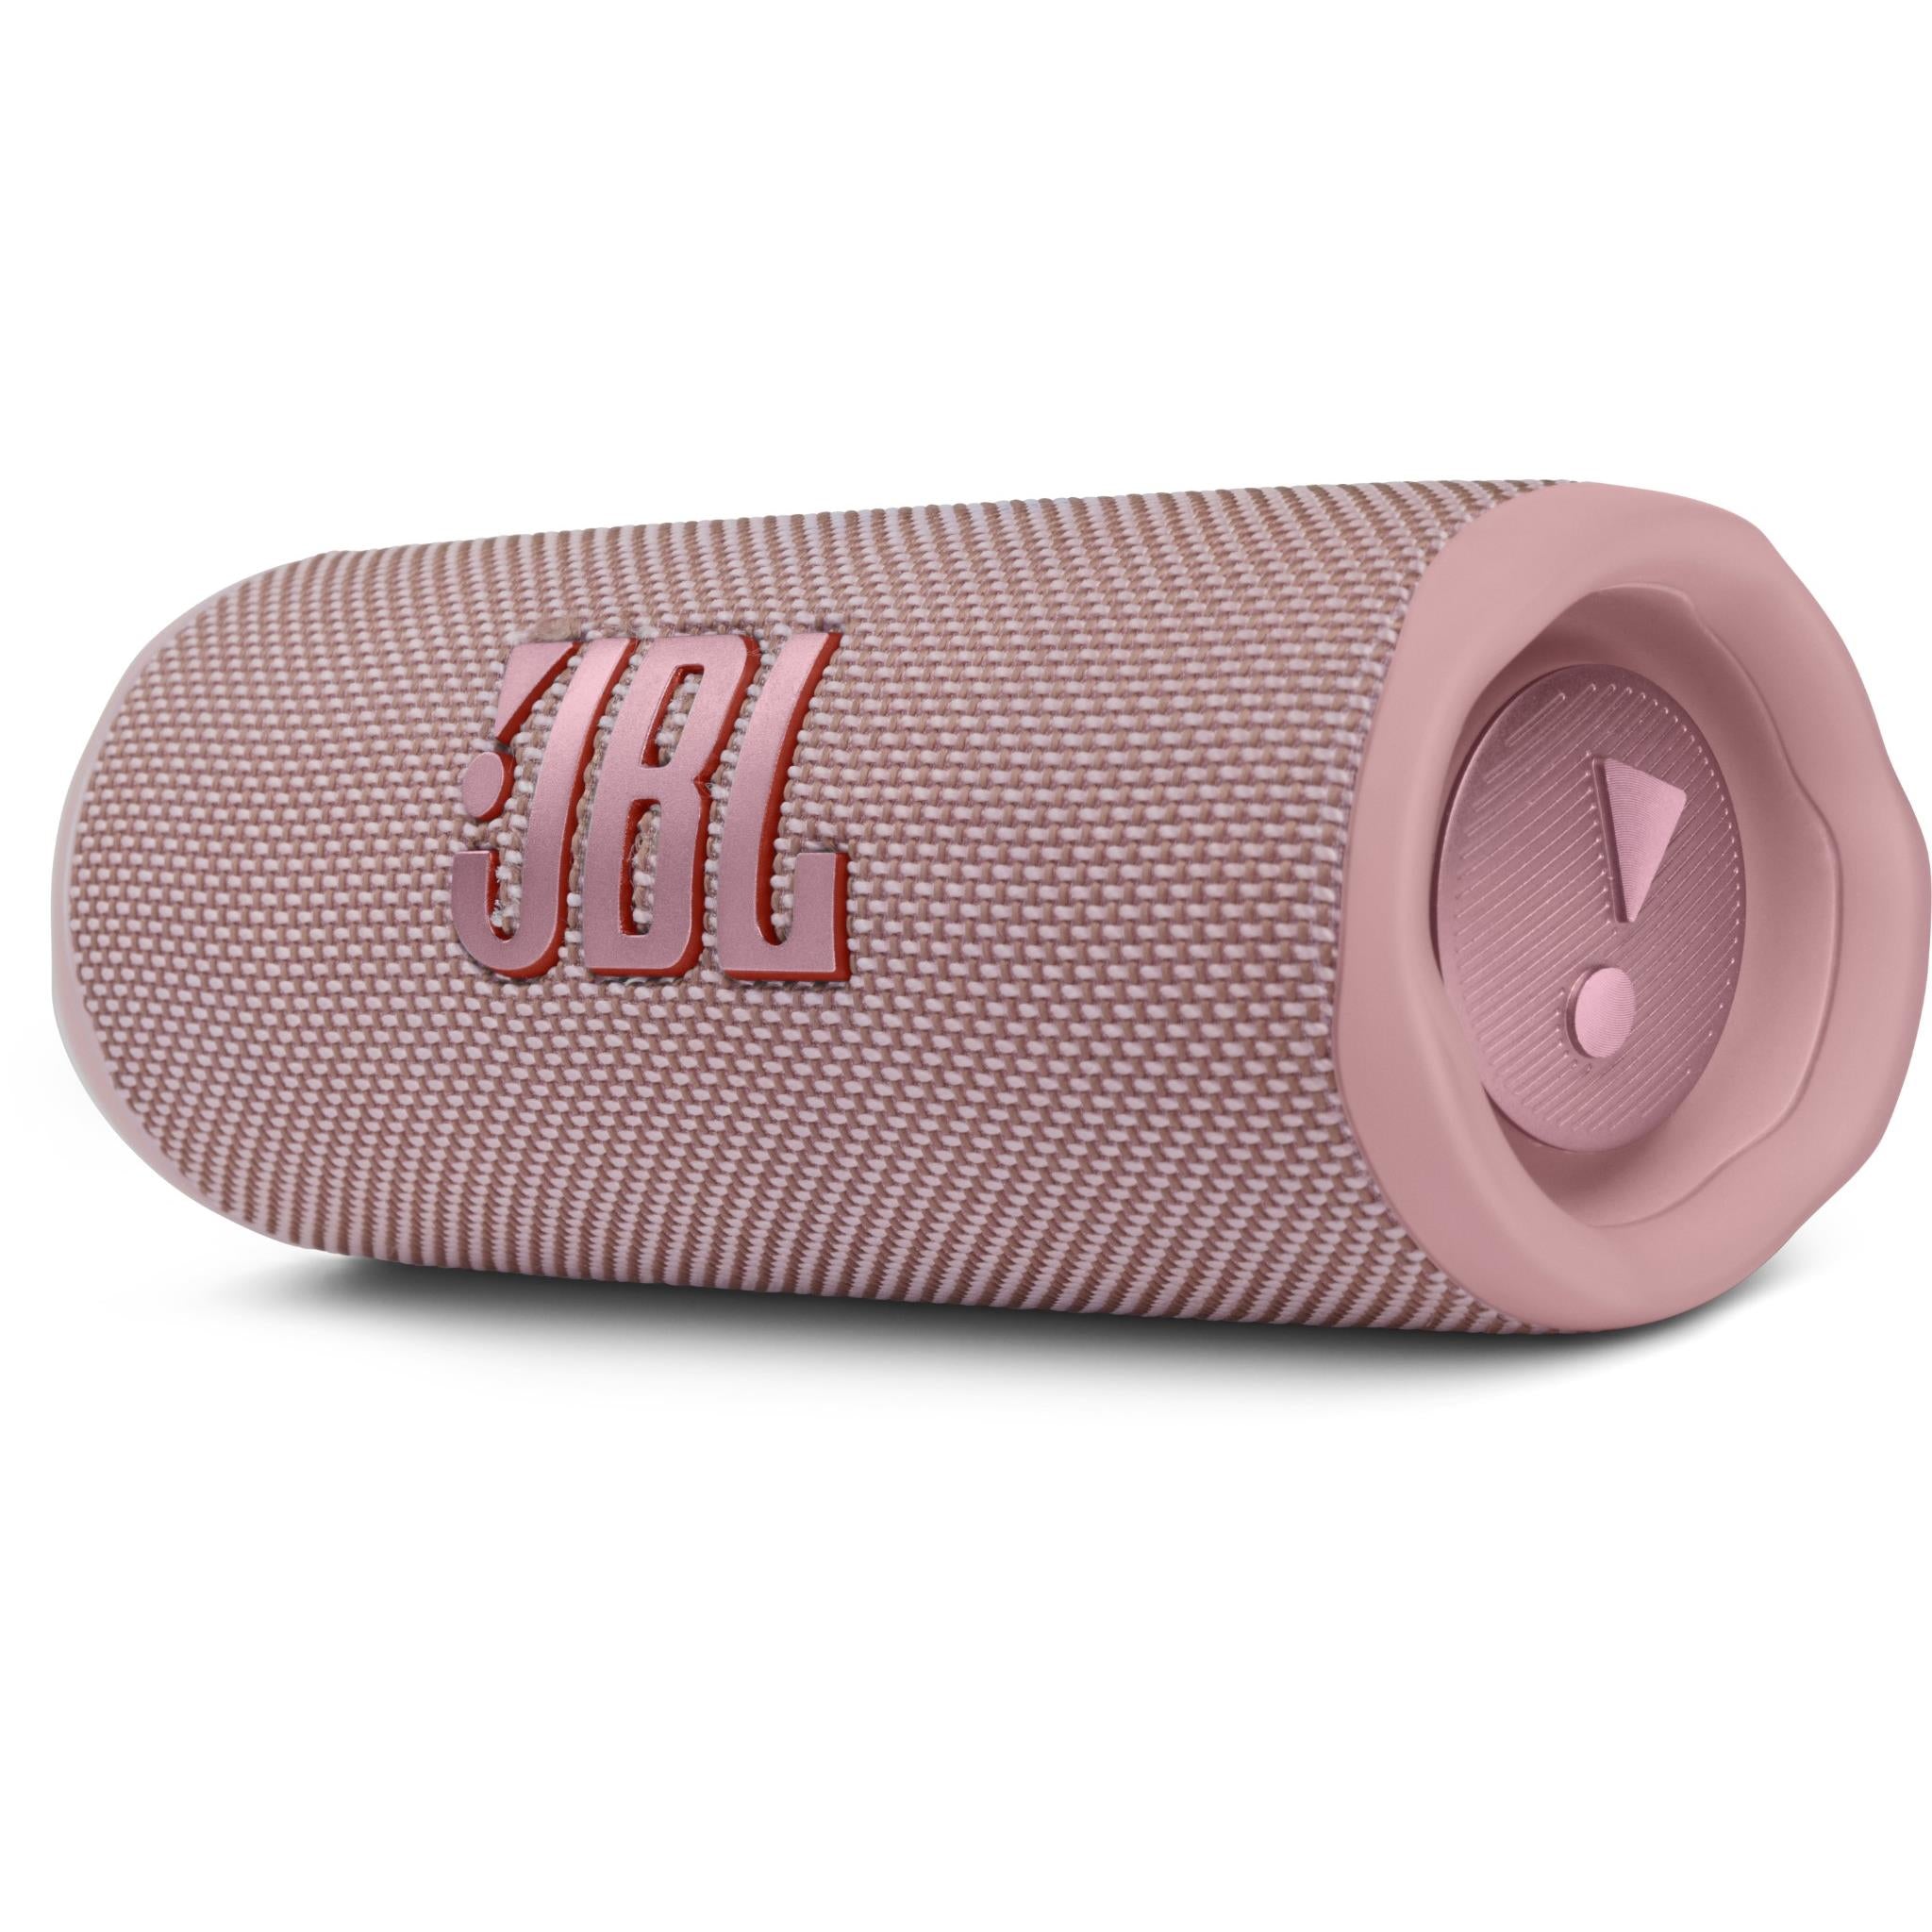 JBL Flip Portable Bluetooth Speaker (Pink) Hi-Fi